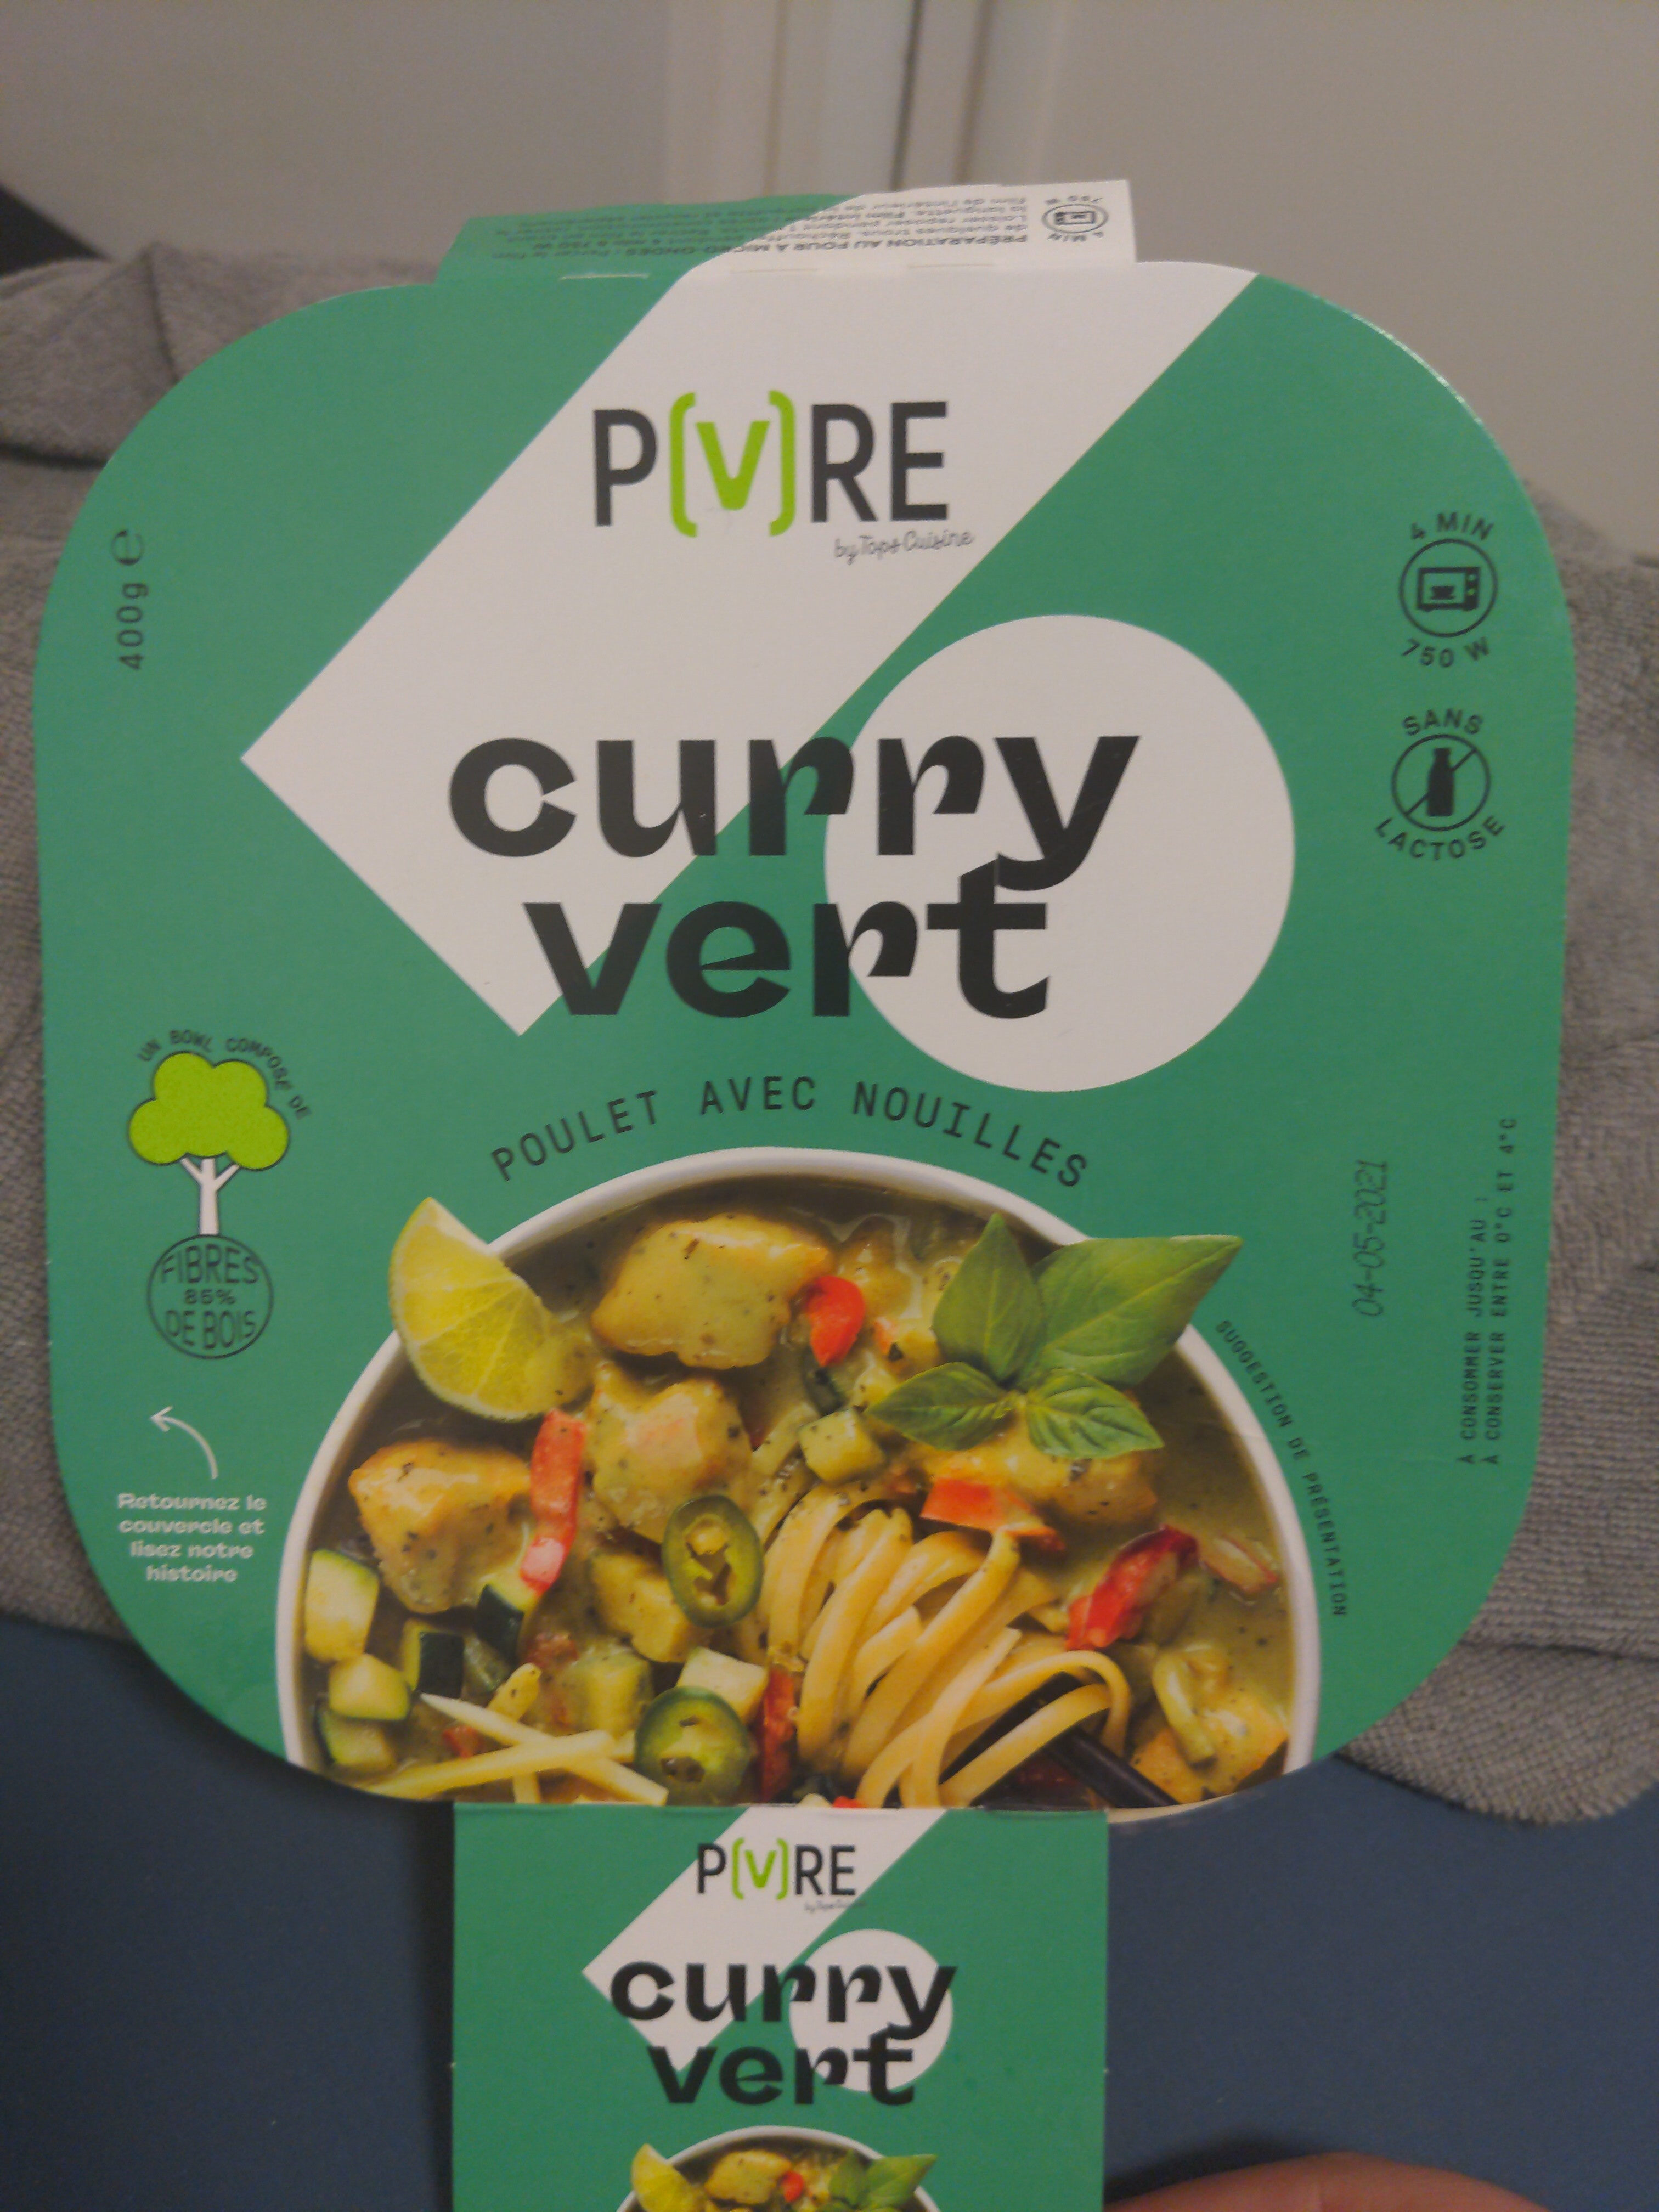 Nouilles poulet curry vert - Product - fr